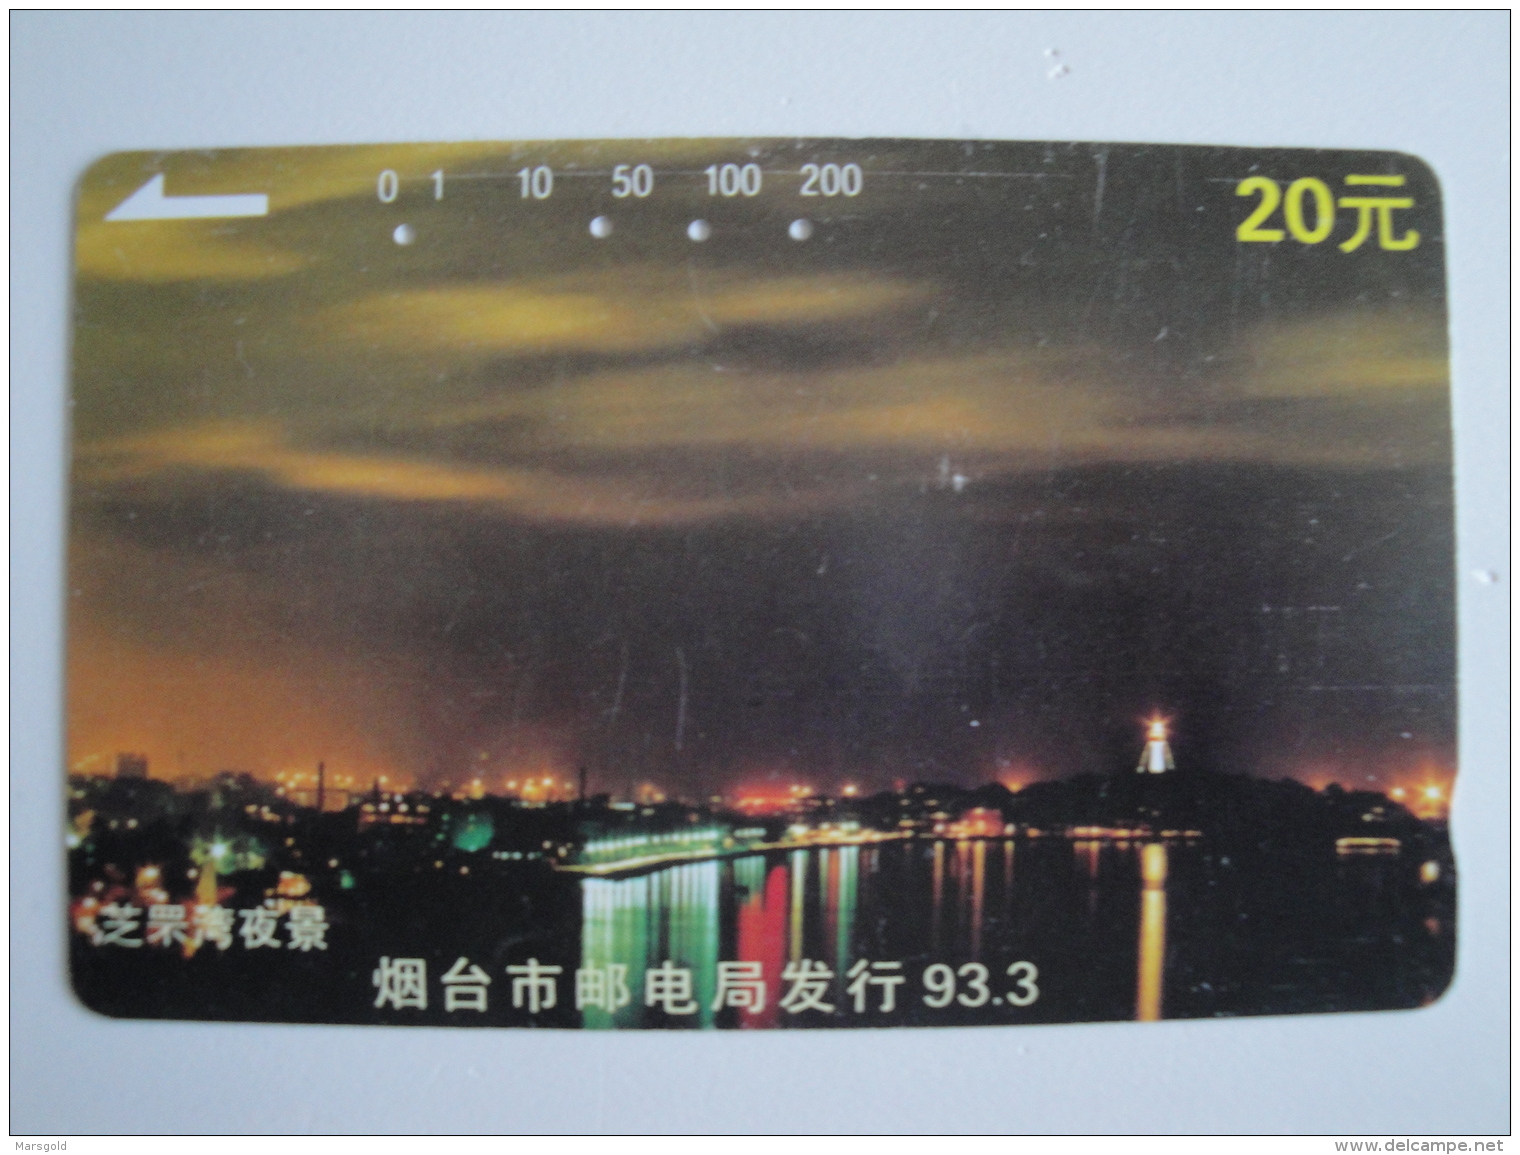 1 Tamura Phonecard From China - View - China